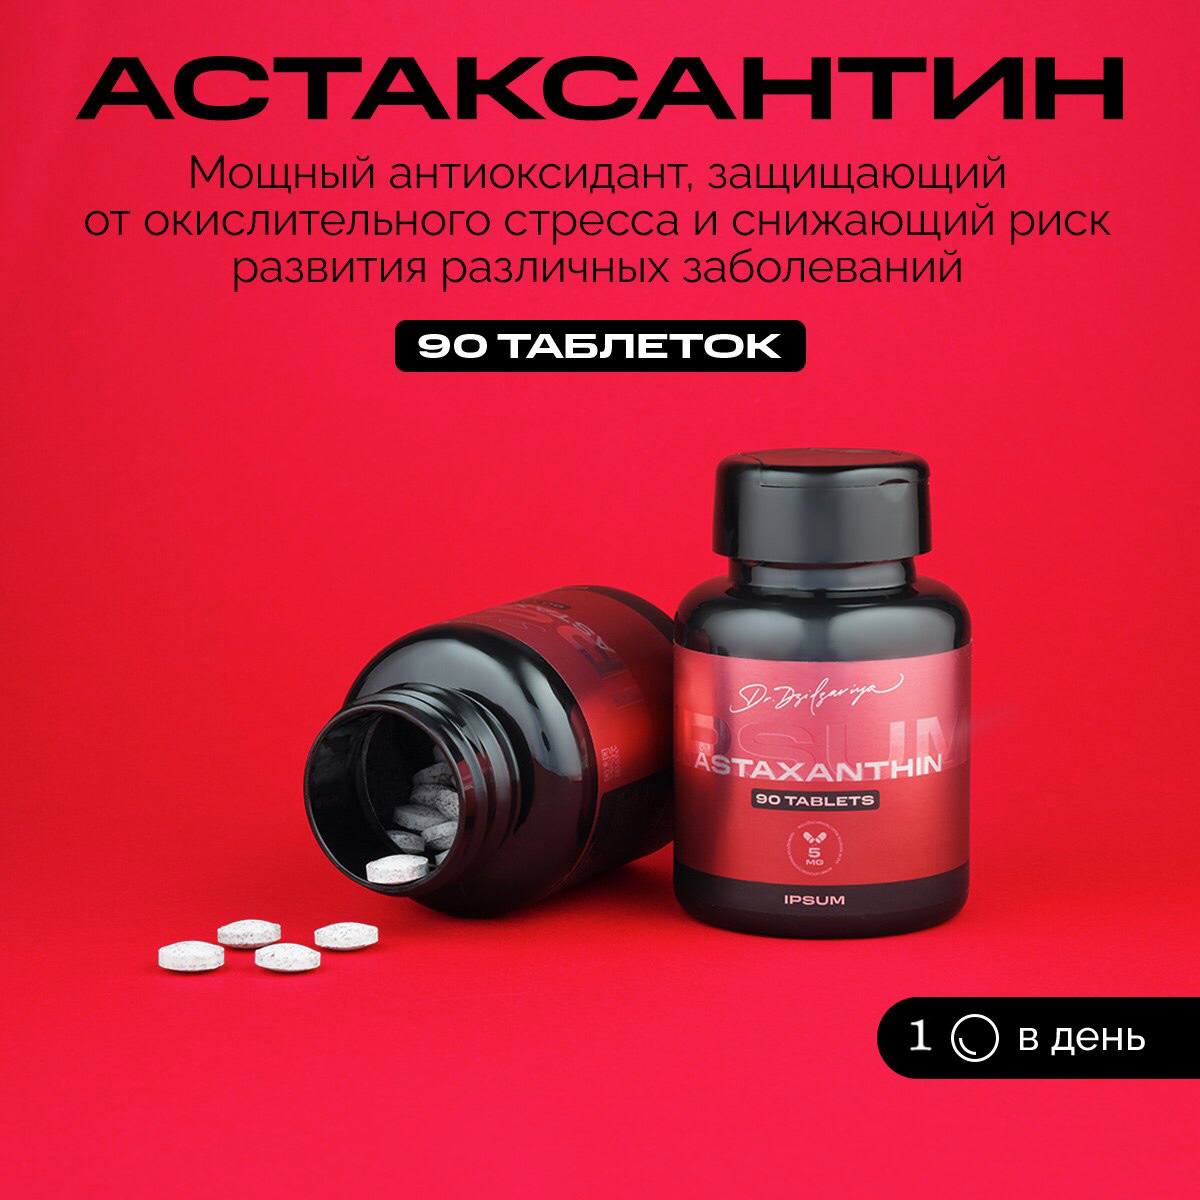 Астаксантин IPSUM антиоксидант, для красоты, молодости и иммунитета, 90 капсул